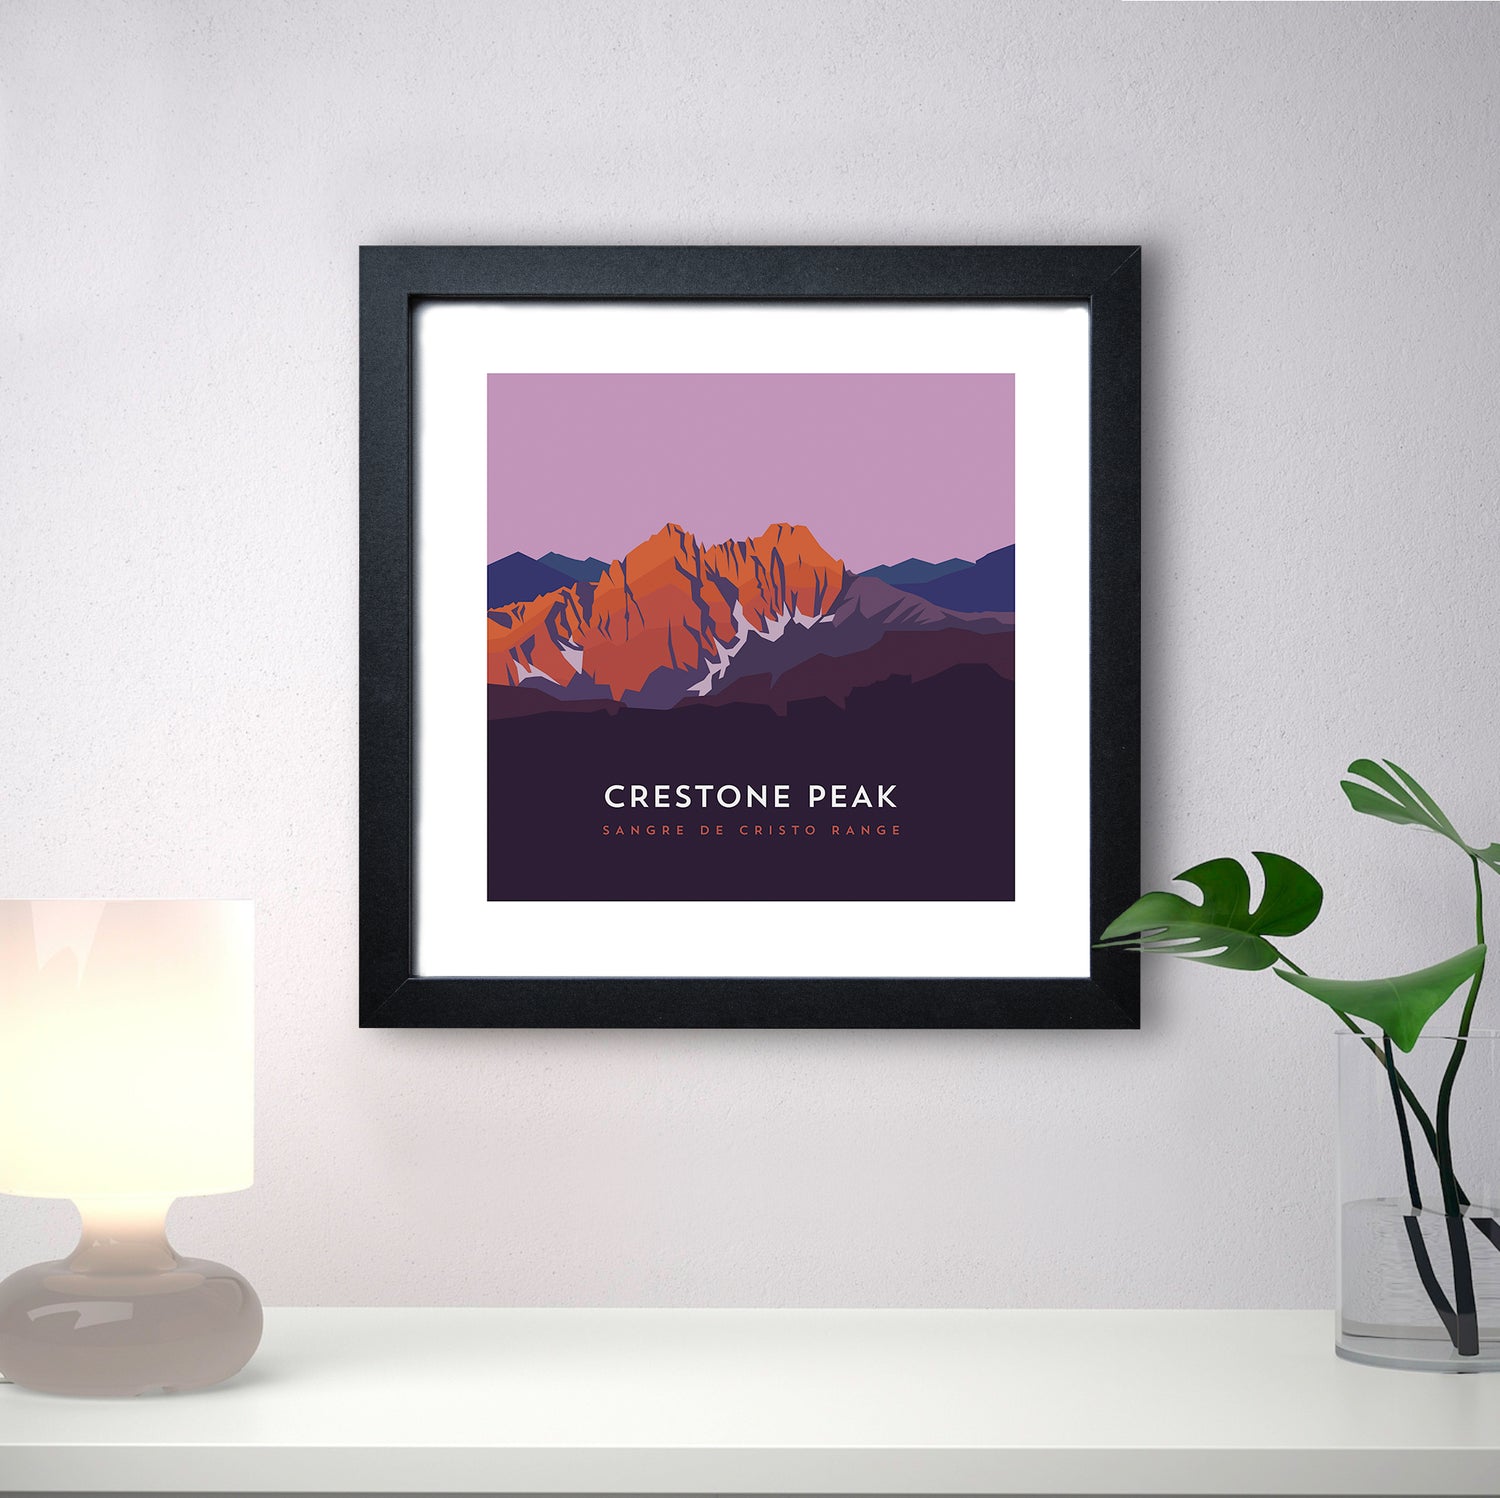 Crestone Peak Colorado 14er Print